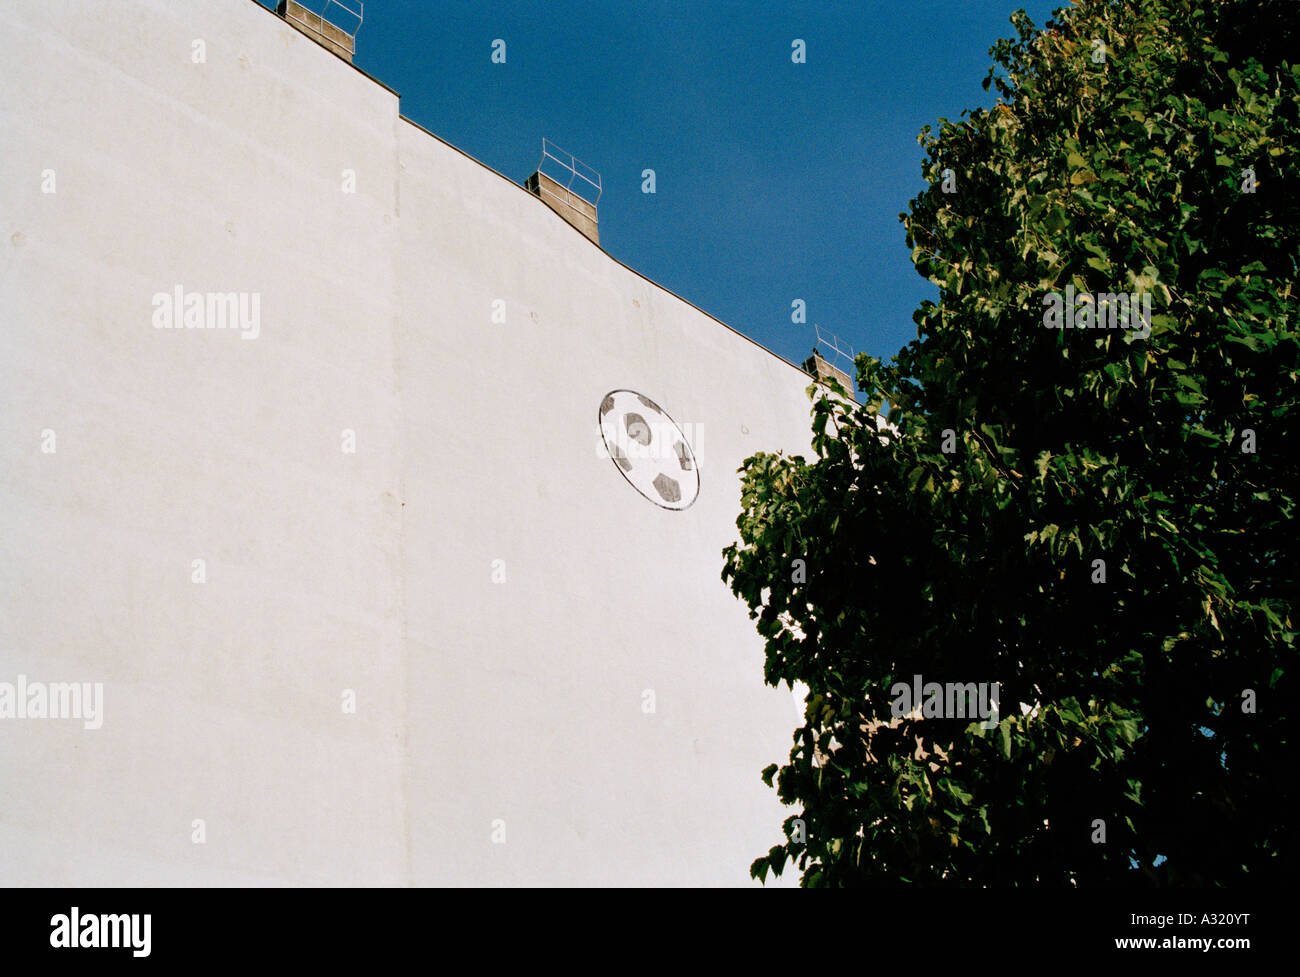 Pallone da calcio murale in alto su una parete Foto Stock